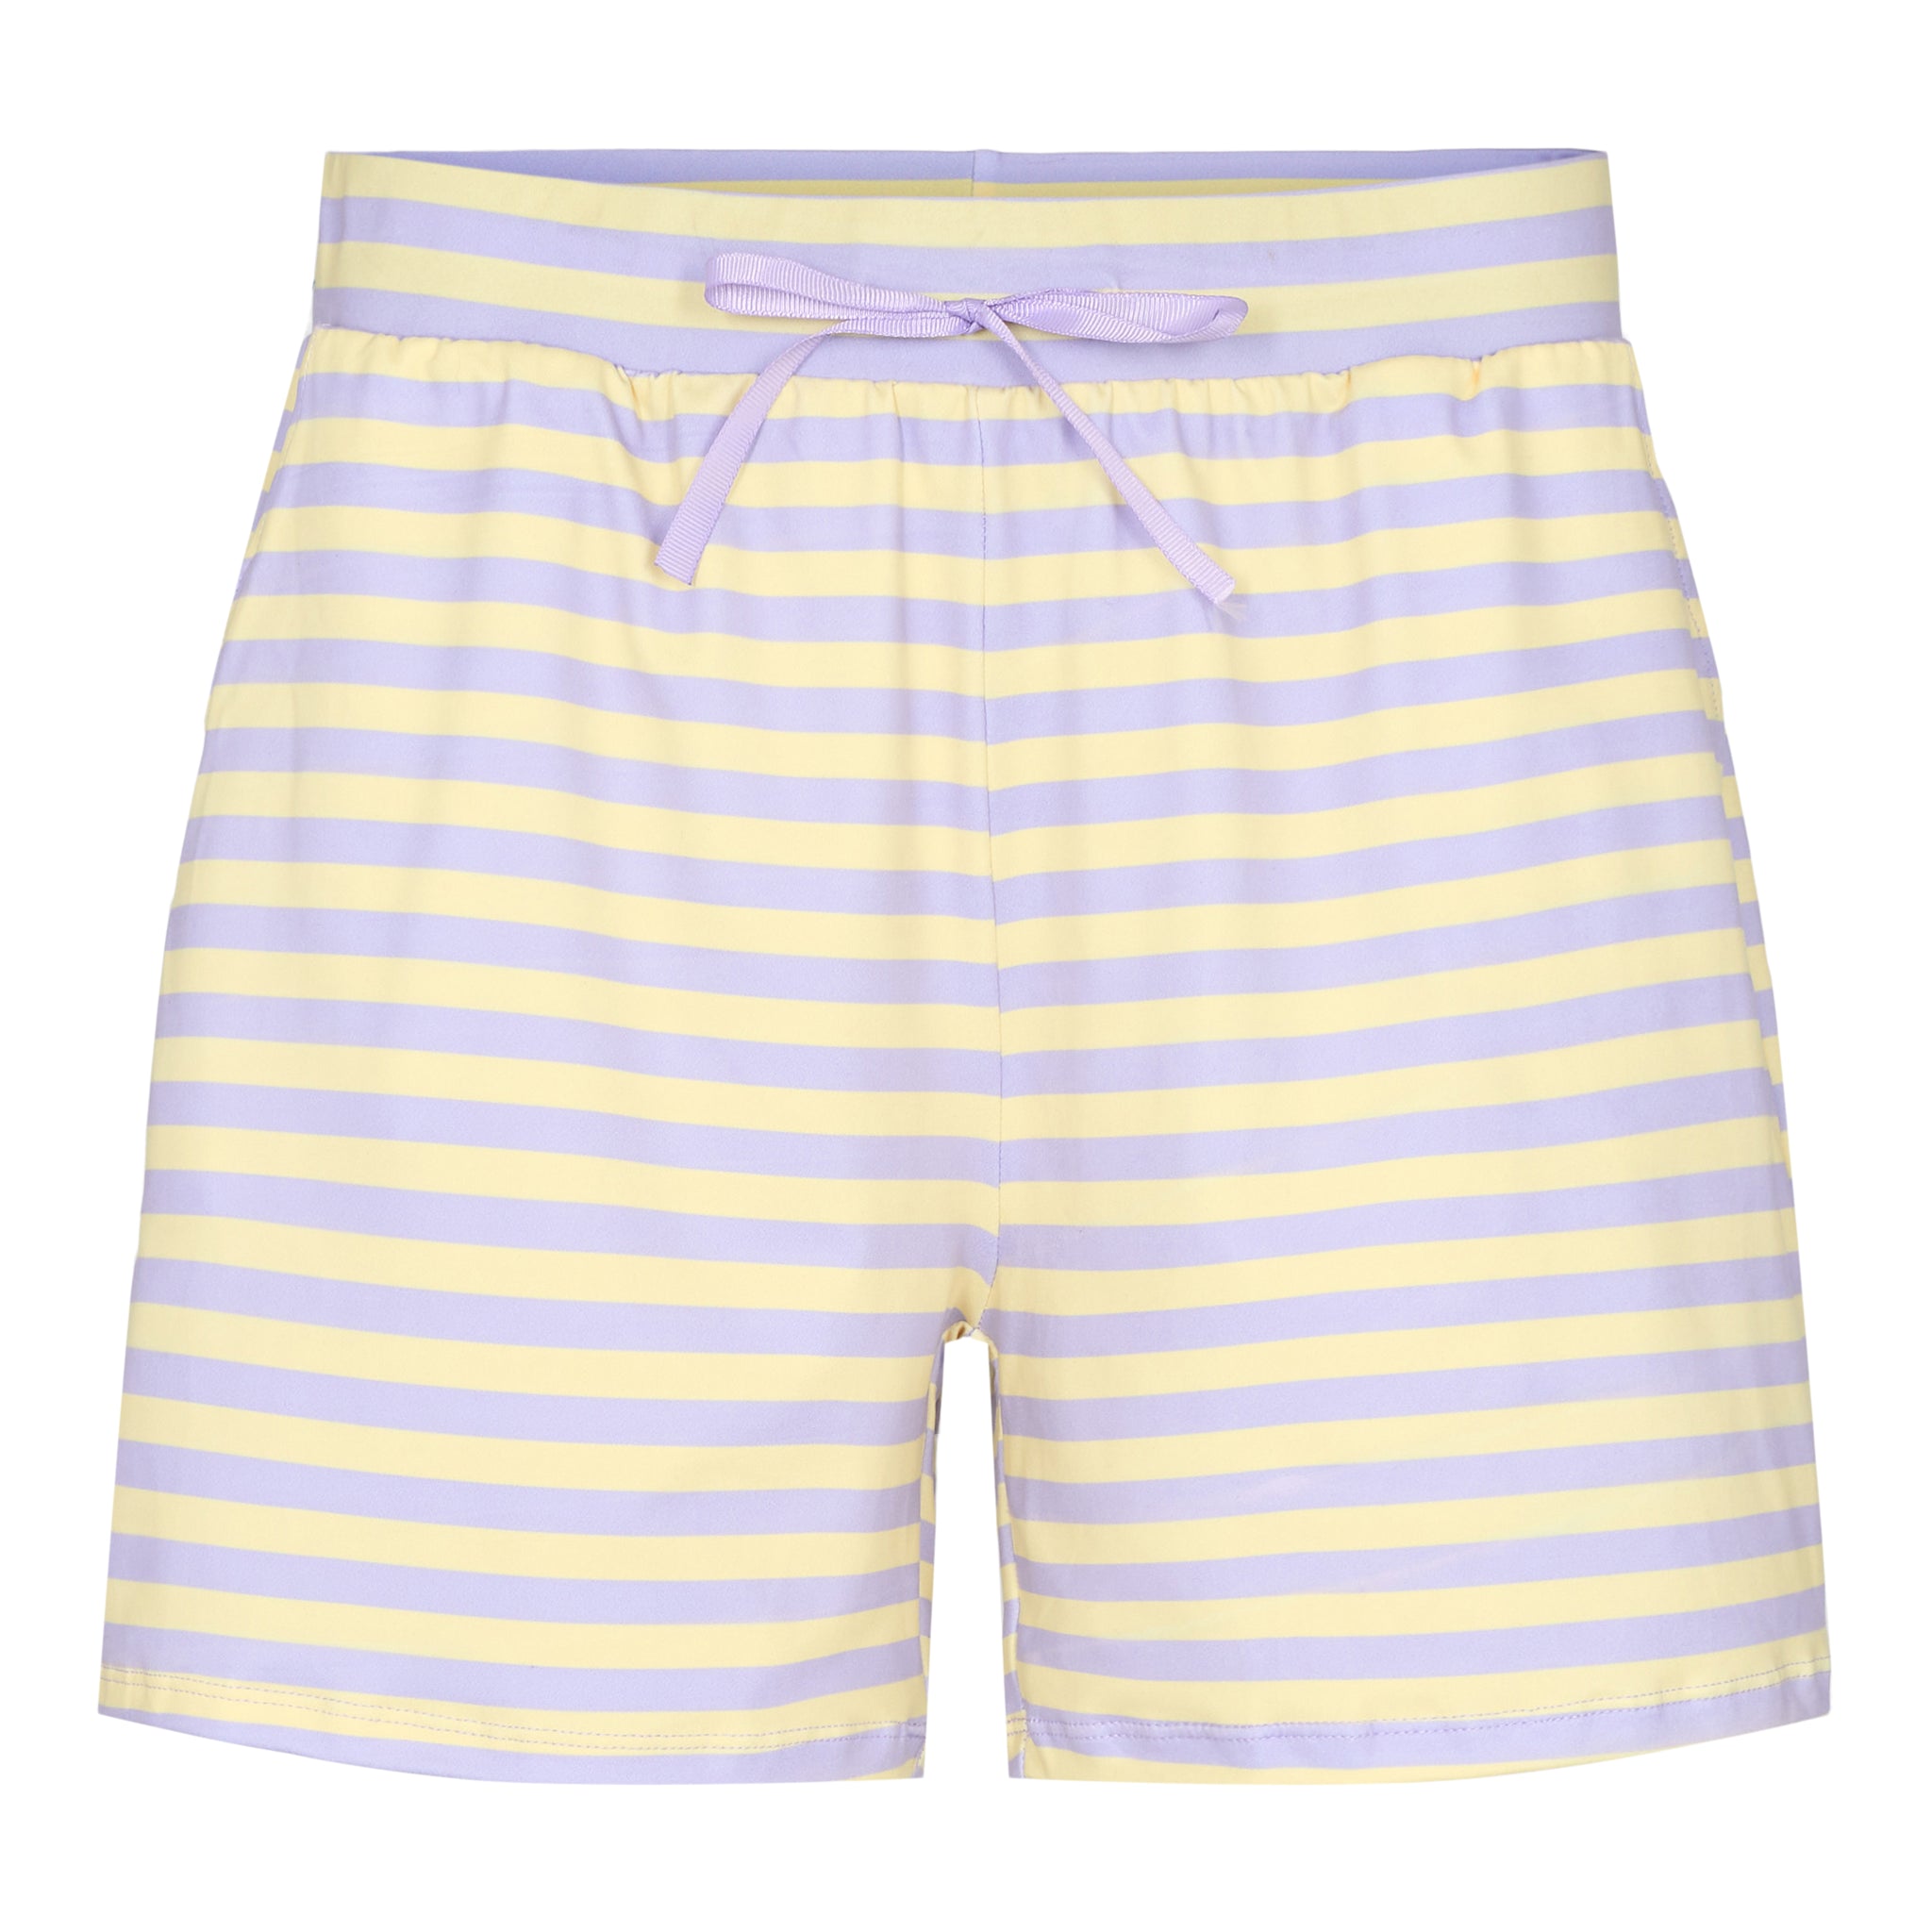 Liberté - Alma Shorts - Lavender Yellow Stripe